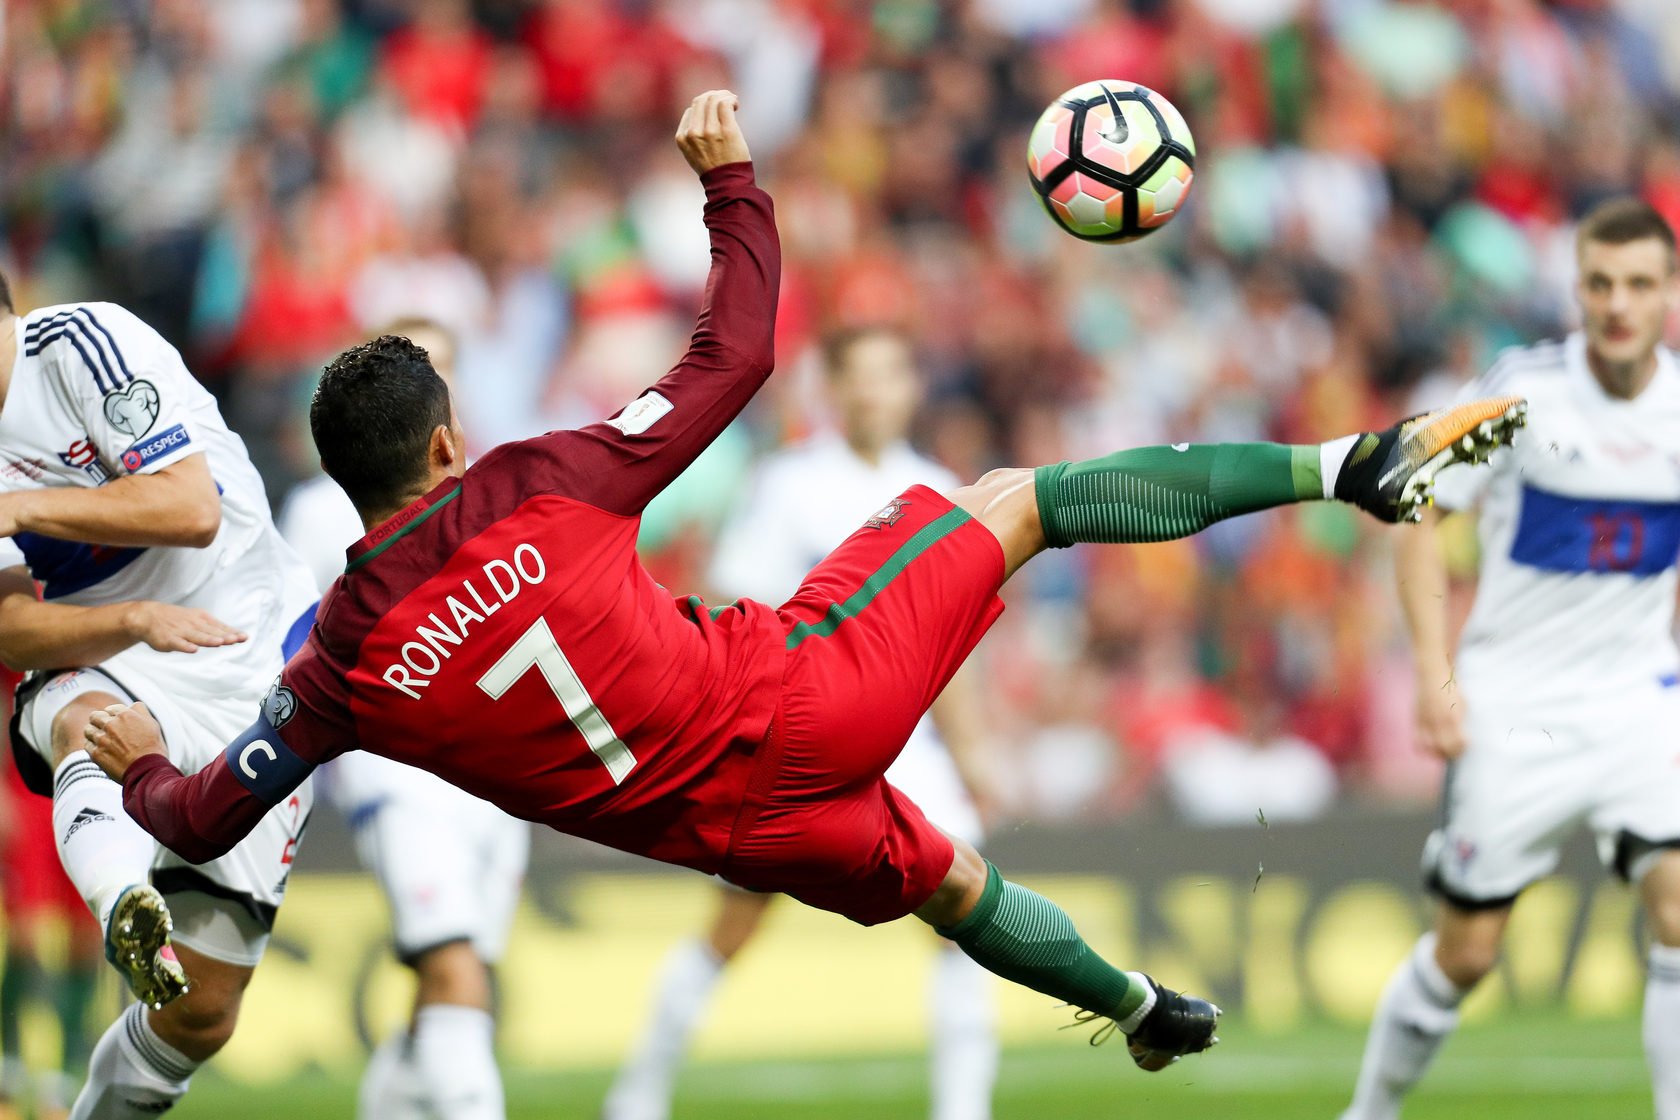 Удар через себя в футболе. Футболист Роналдо удар через себя. Криштиану Роналду удар через себя. Криштиану Роналду лучшие голы. Cristiano Ronaldo 2018 удар через себя.